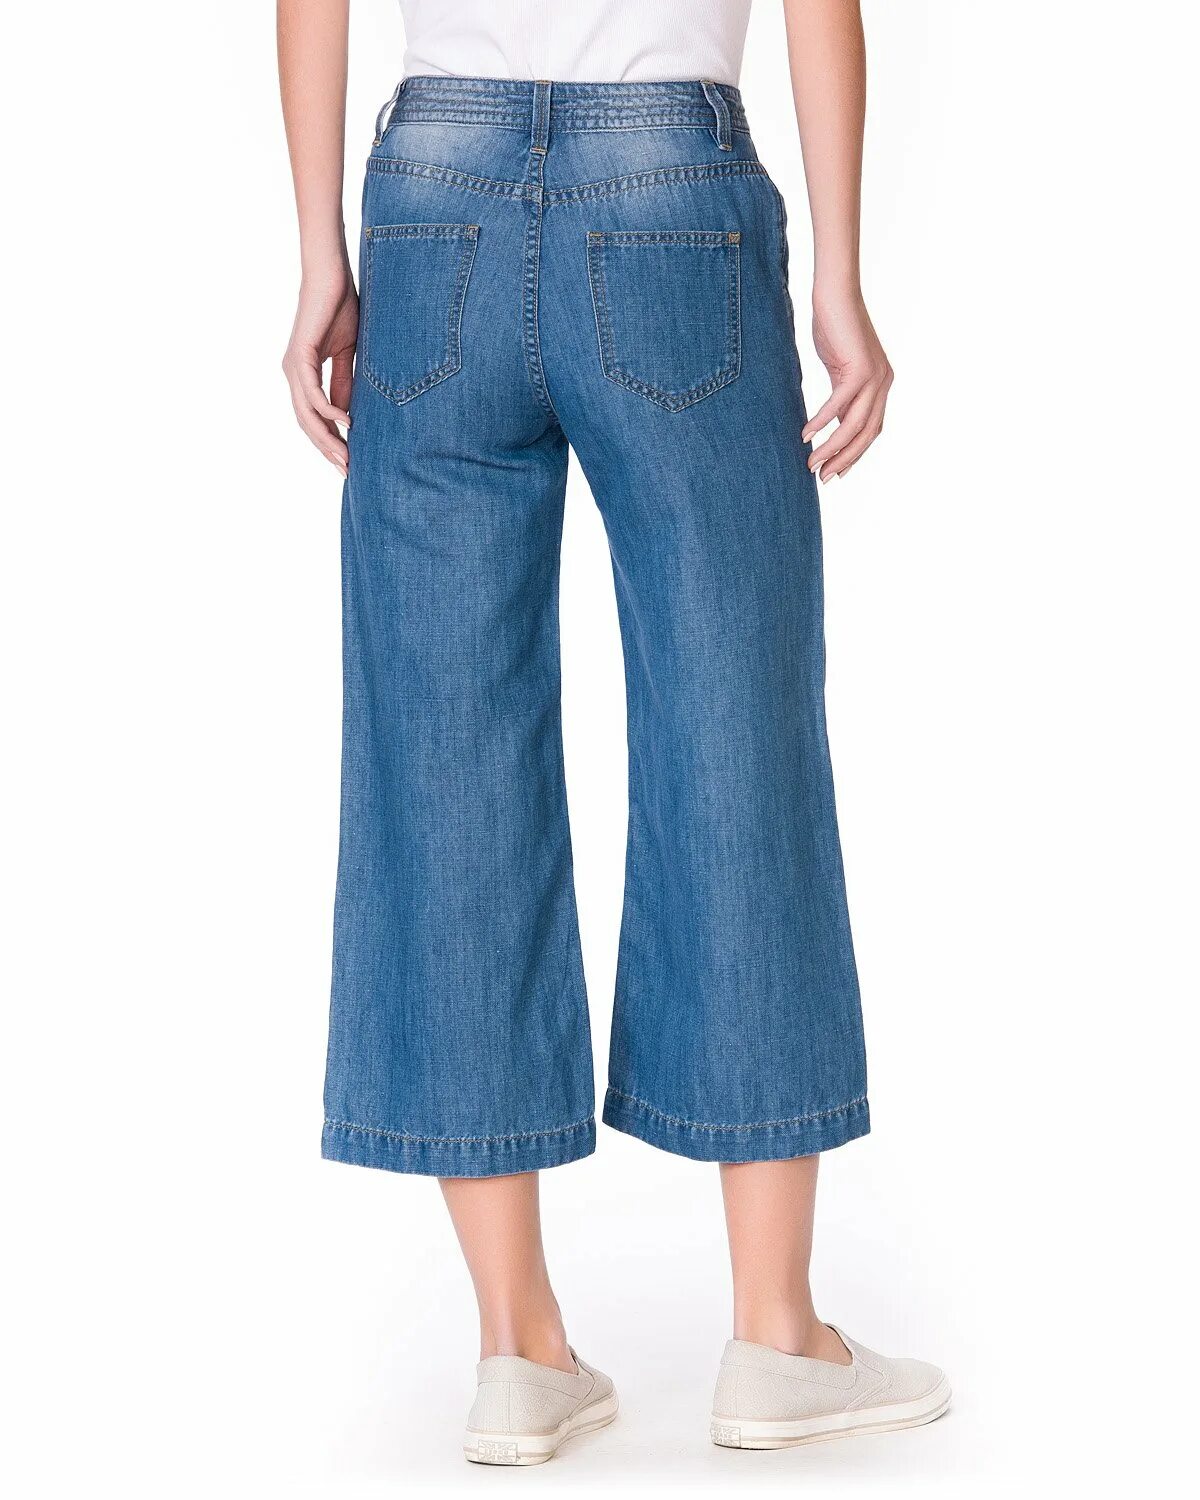 Облегчающие джинсы. Джинсы облегченные женские. Облегчённые джинсы женские. Джинсы Мальвины. Облегченный джинс.